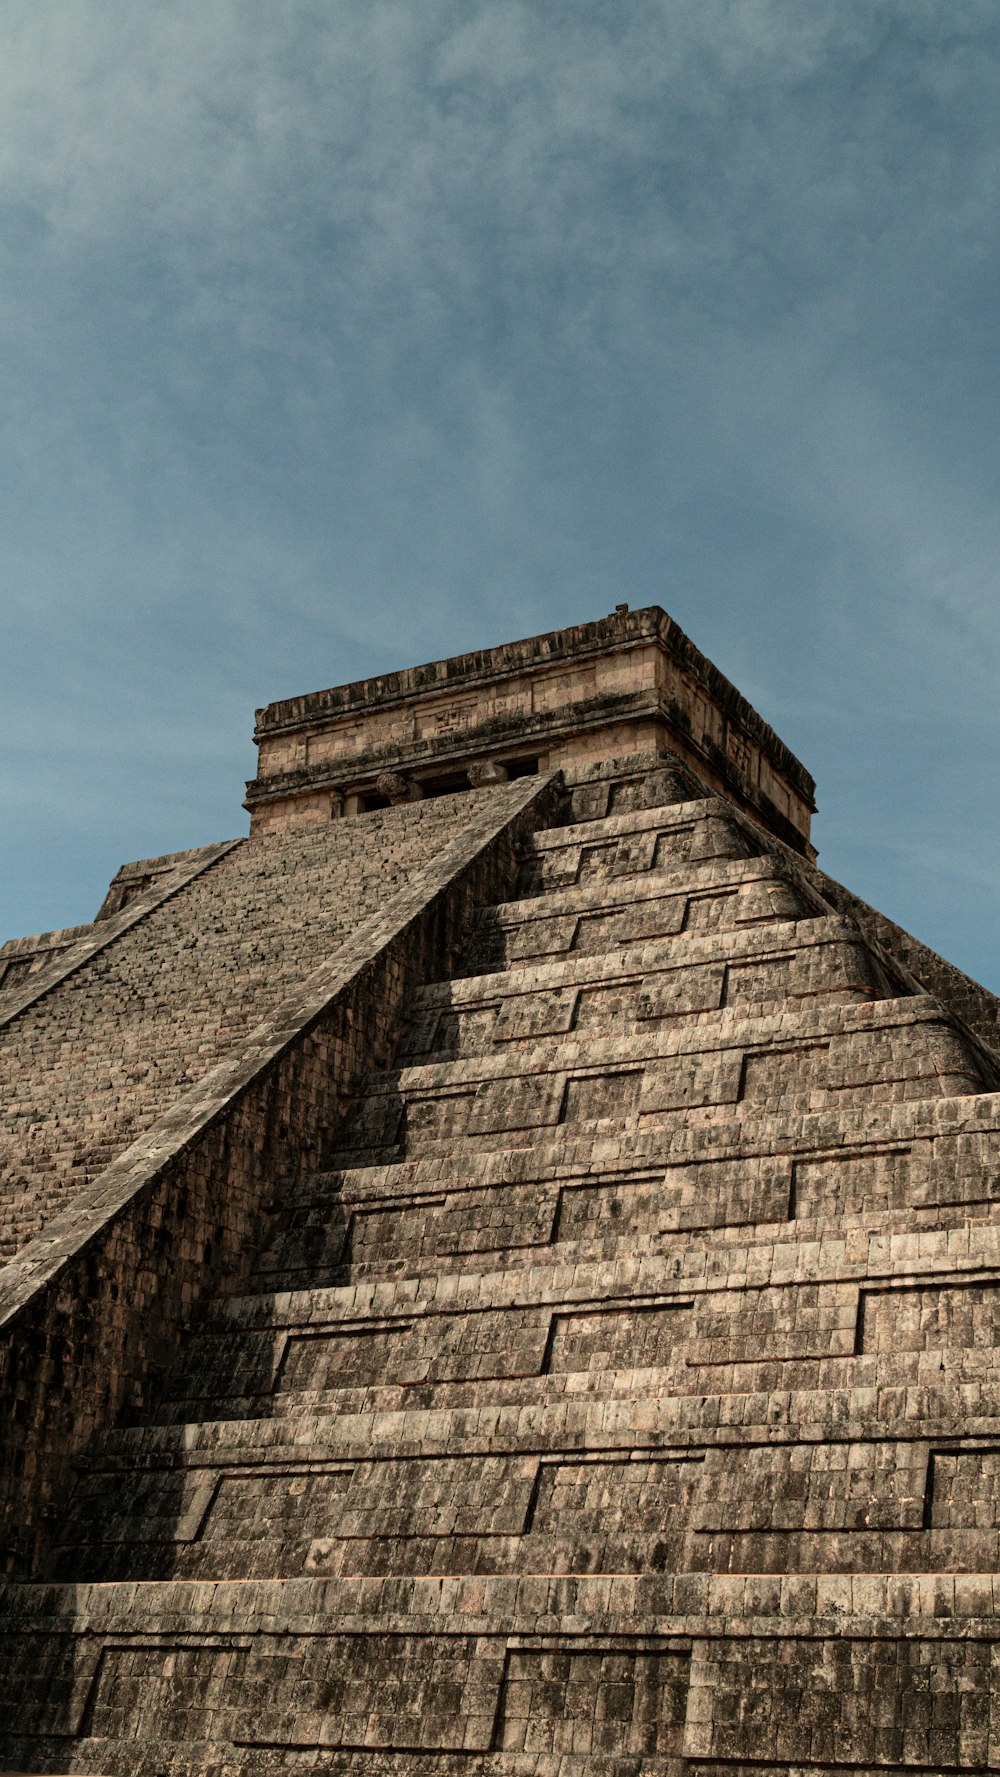 Una pirámide muy alta con un reloj en su lado